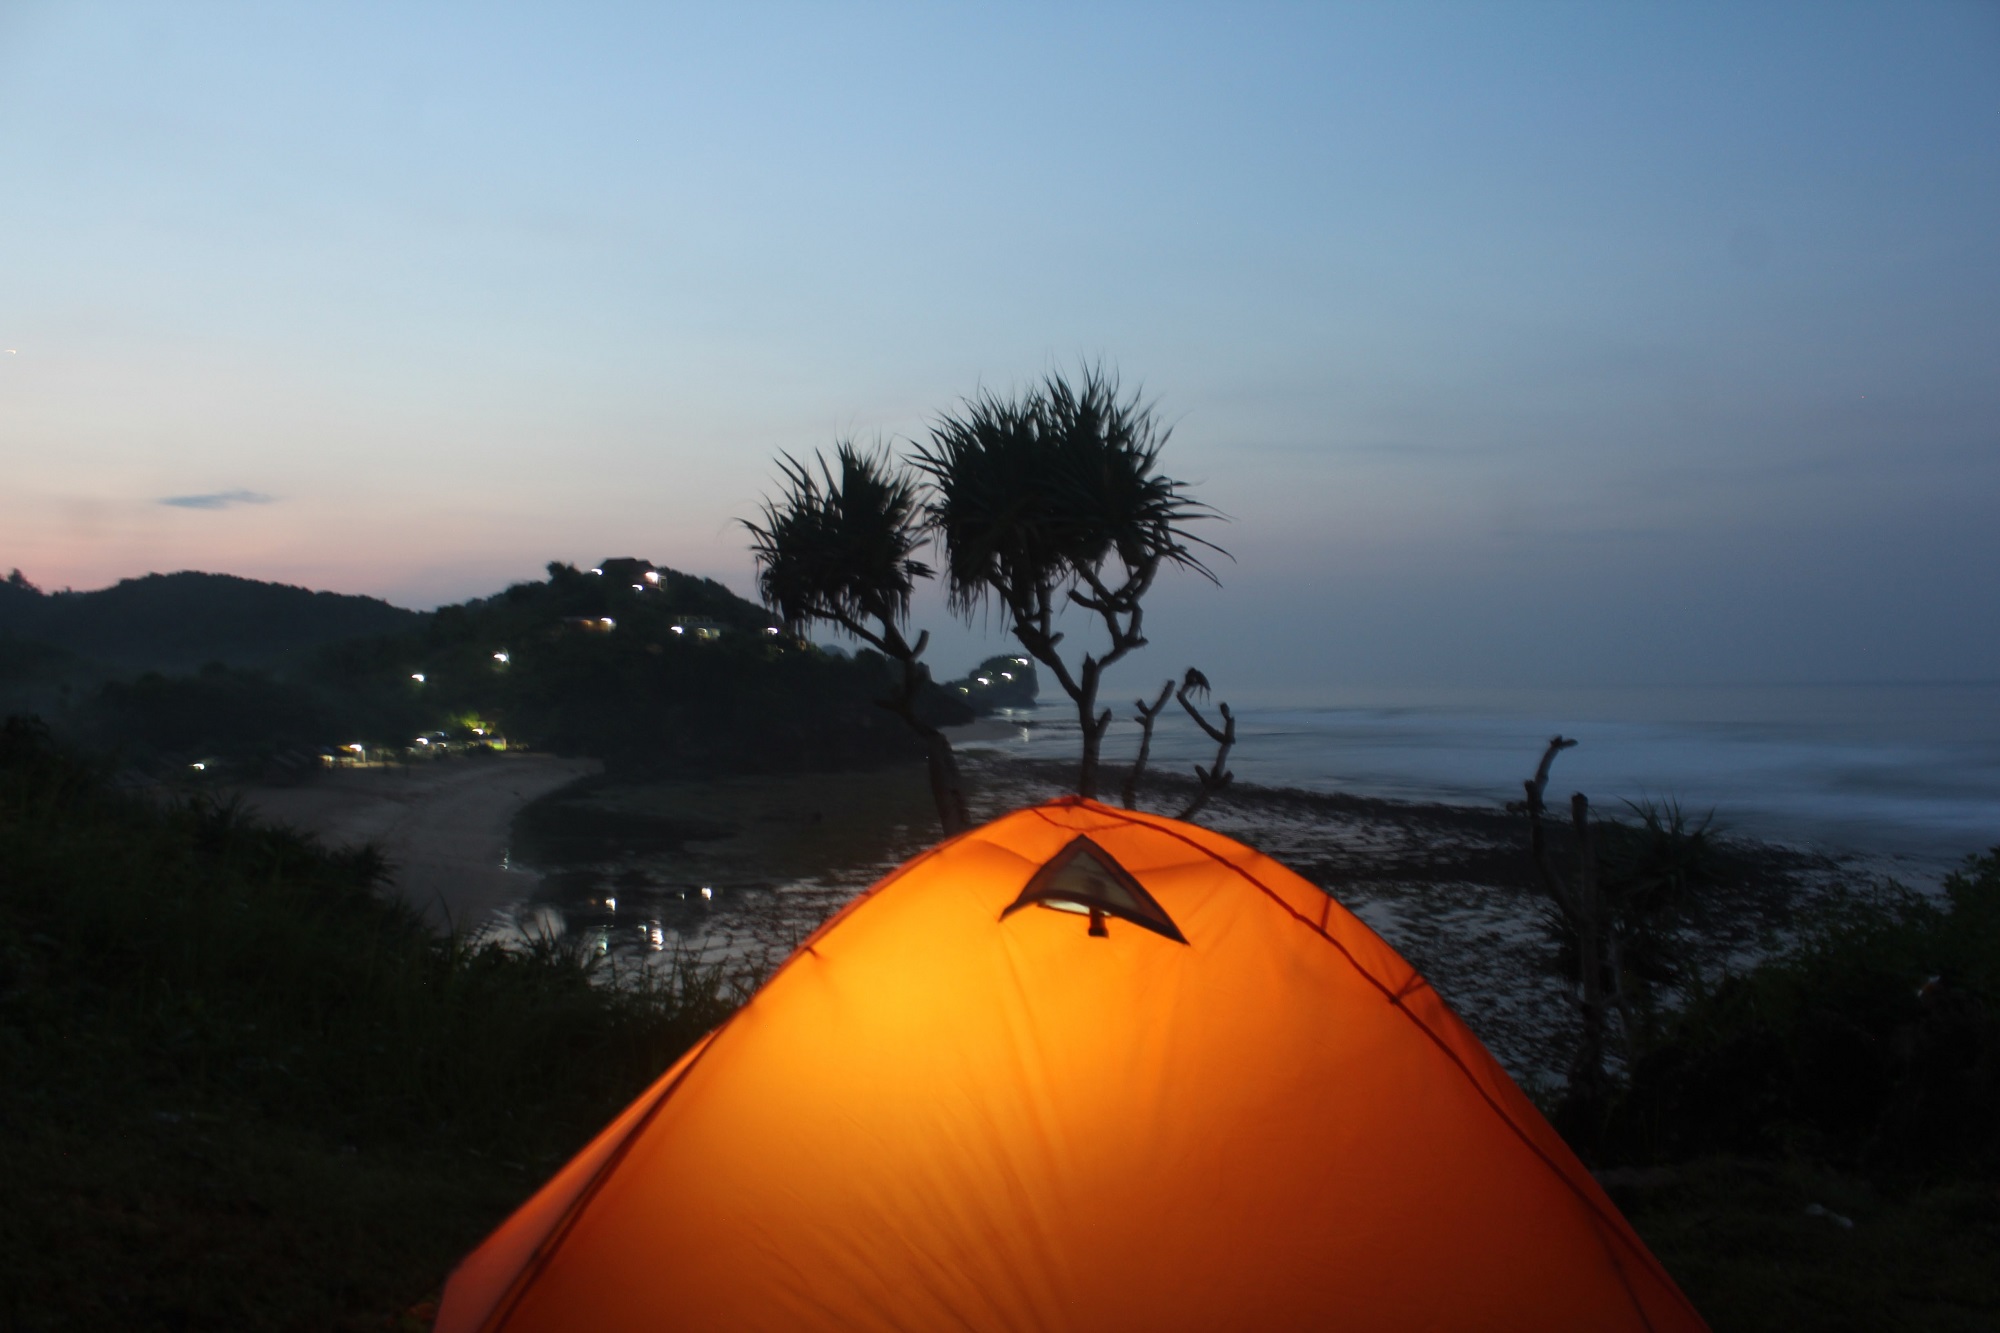 Bermalam dengan Camping di Pantai